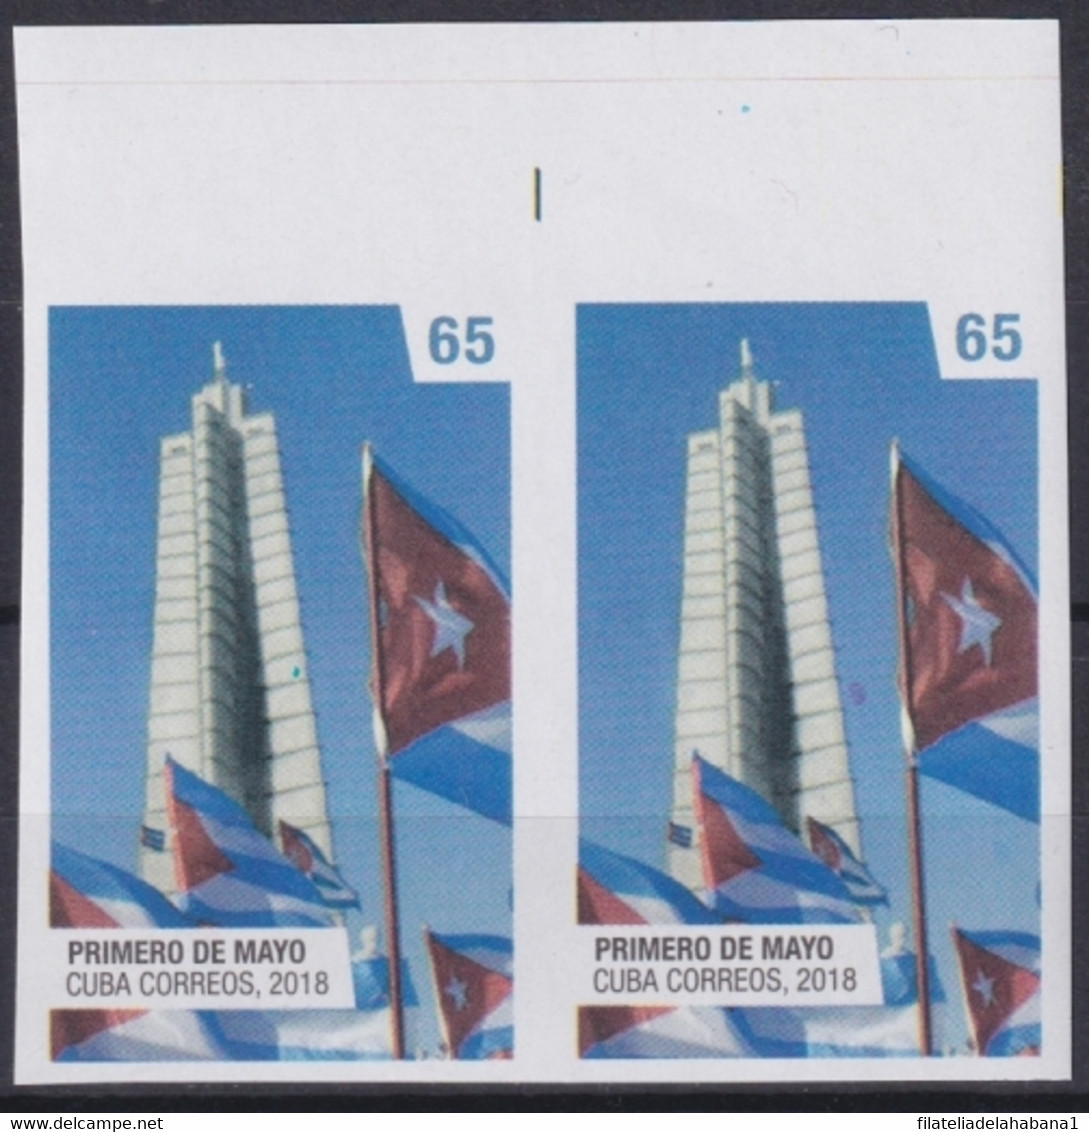 2018.221 CUBA MNH 2018 IMPERFORATED PROOF LABOR DAY PRIMERO DE MAYO FLAG. - Sin Dentar, Pruebas De Impresión Y Variedades